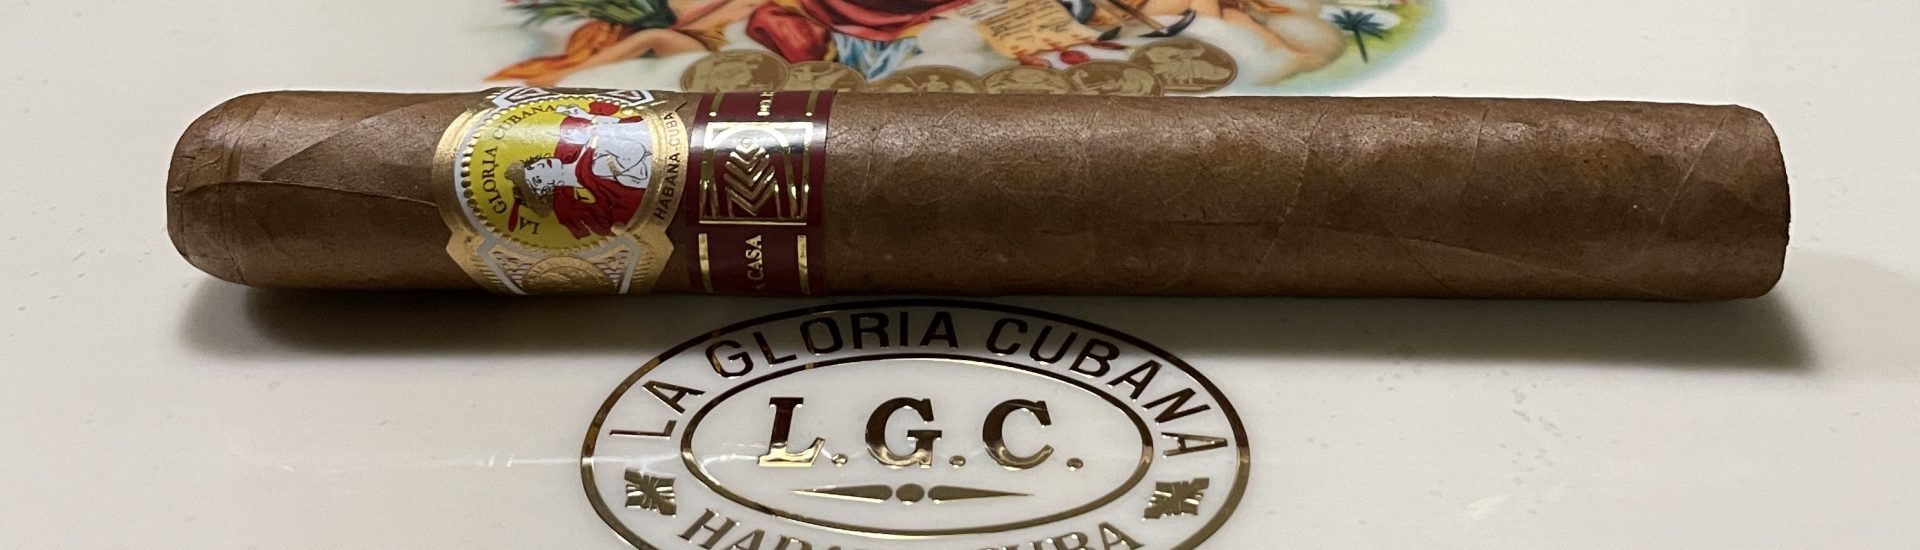 NEW CIGAR - La Gloria Cubana "Glorias" & a complete list of La Casa del Habano exclusive cigars